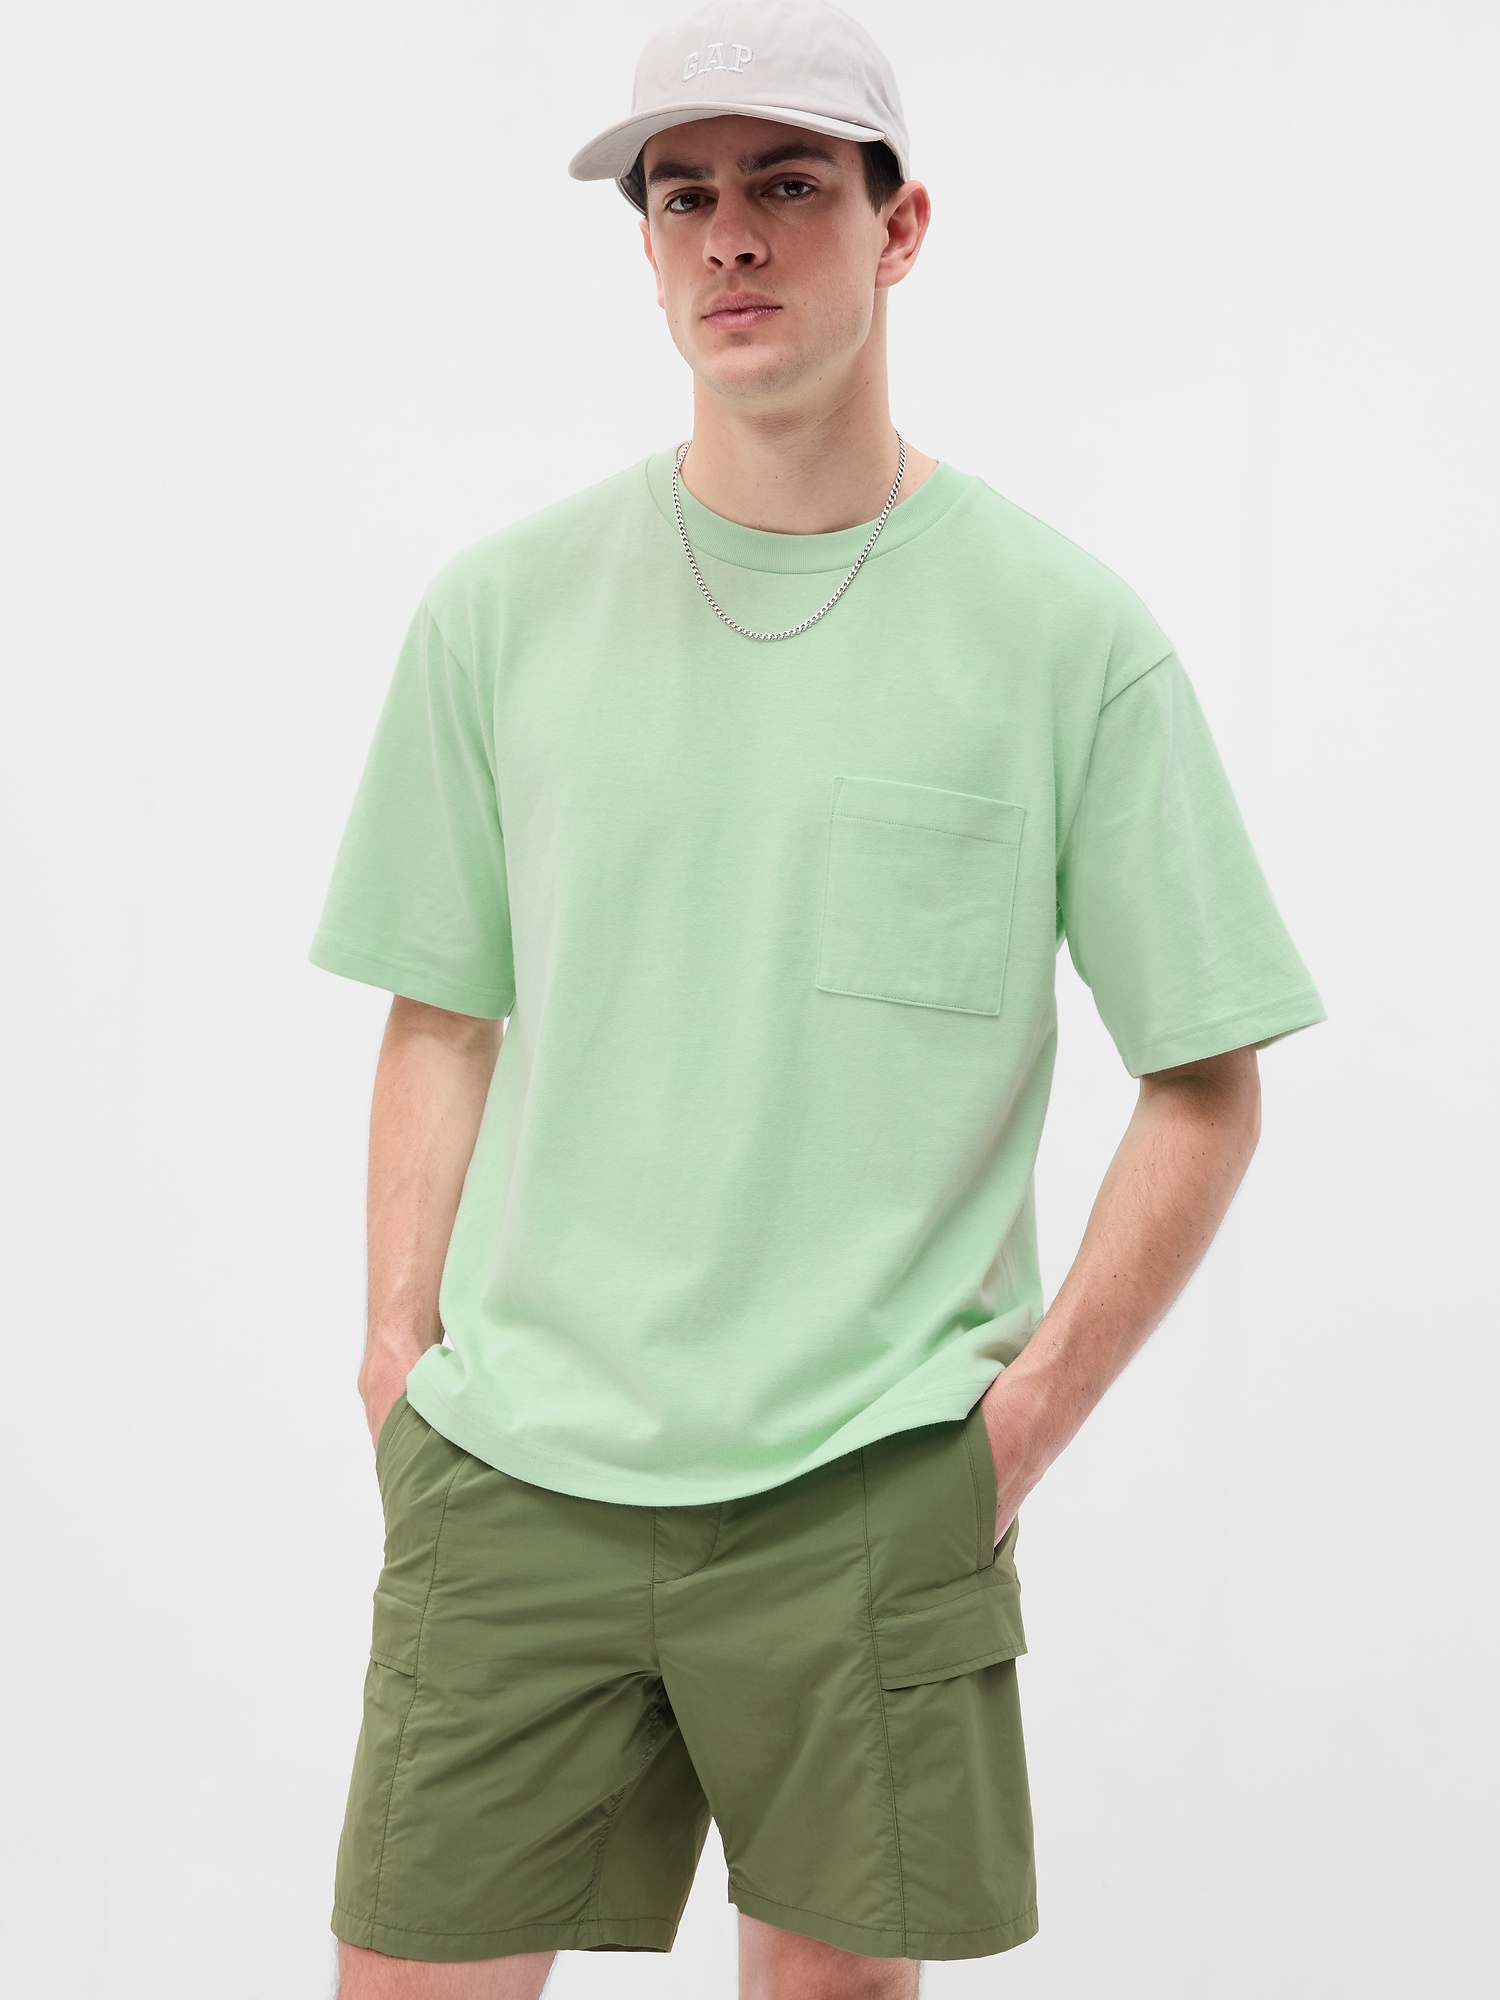 Gap Heavyweight Relaxed Fit Pocket T-Shirt green - 796267072